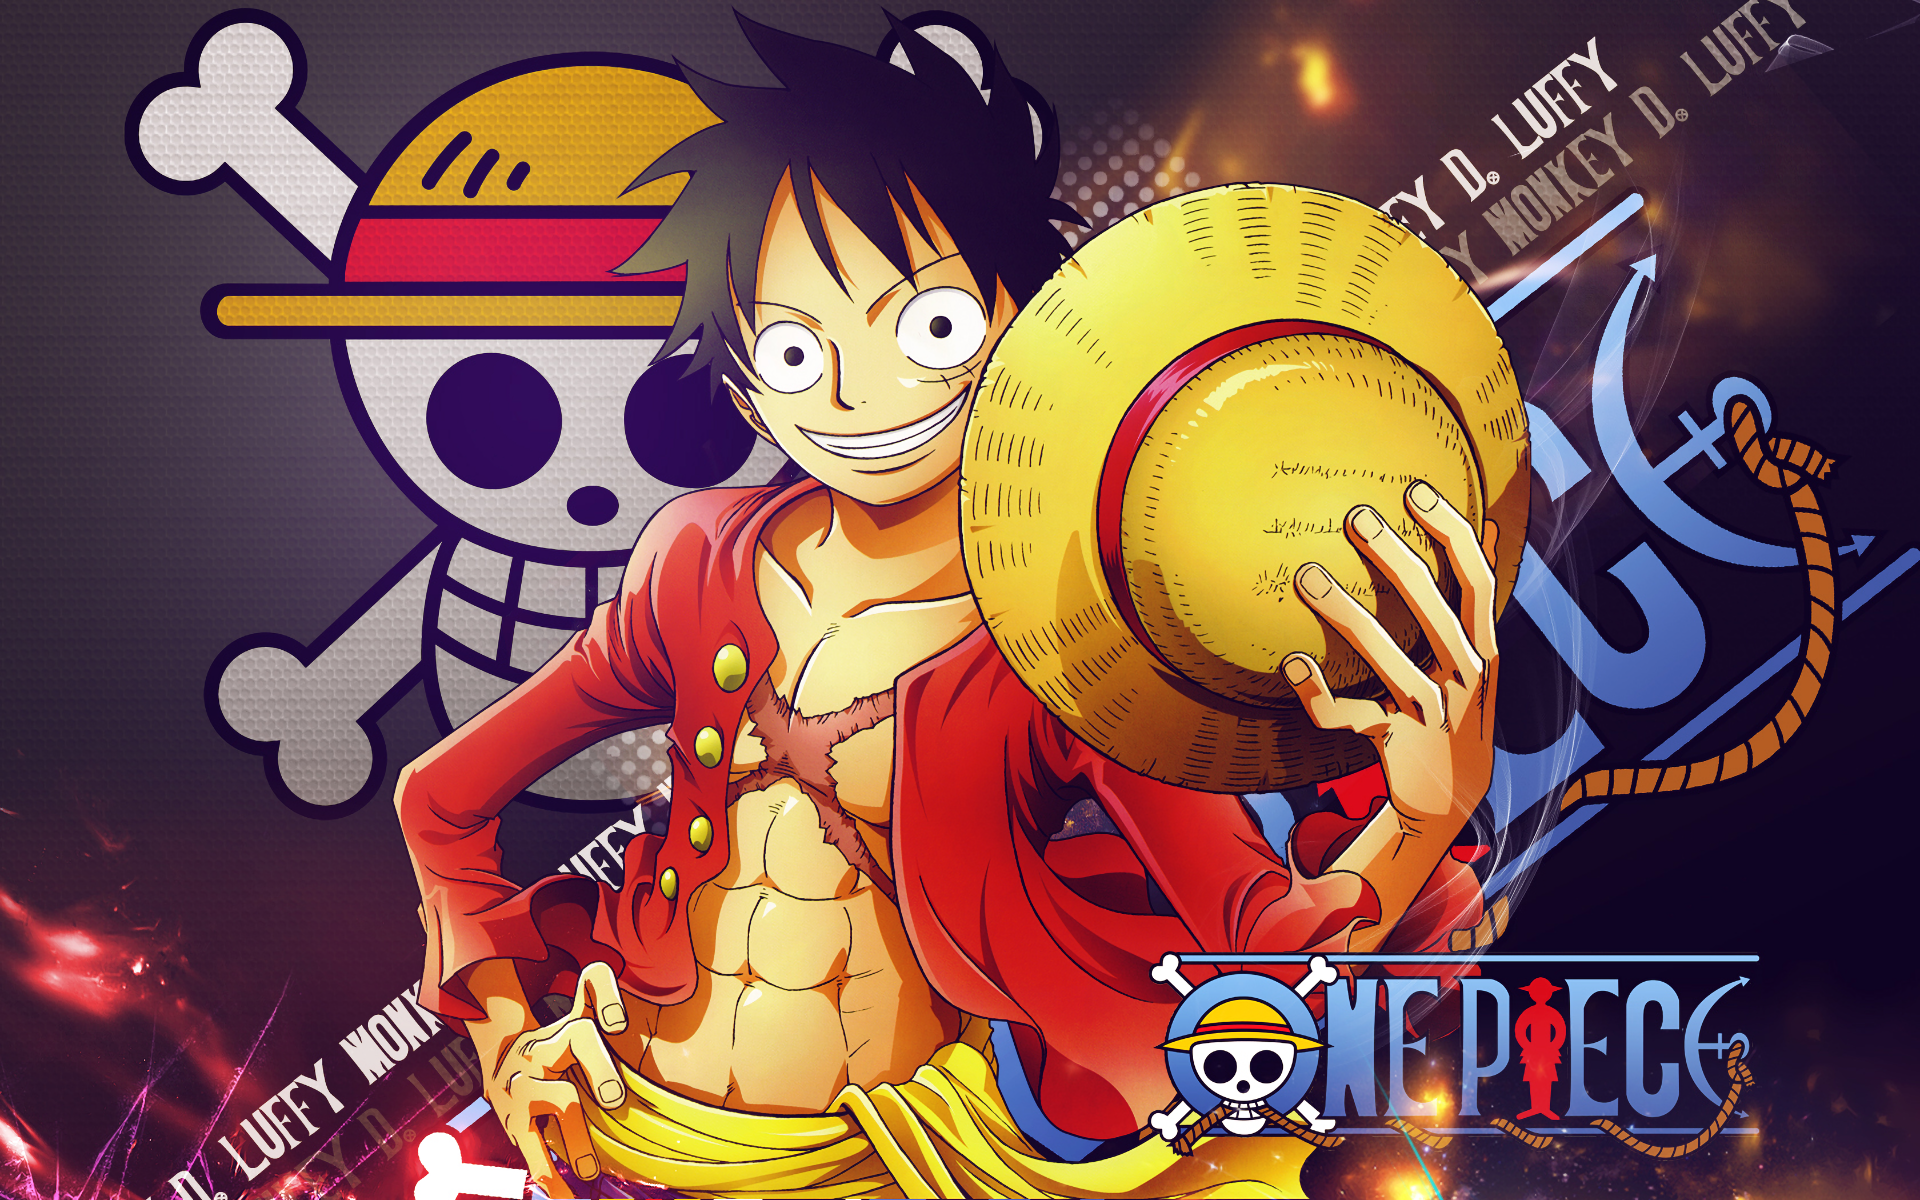 Xem anime One Piece cùng với những hình nền HD wallpaper đẹp mắt và sống động. Hình ảnh này không chỉ làm cho màn hình máy tính của bạn thêm sáng tạo và tươi mới, mà còn đi kèm với những cảnh quay đẹp, hấp dẫn và đầy cảm xúc trong anime. Hãy cùng với những hình nền HD này thưởng thức anime One Piece một cách tuyệt vời nhất!